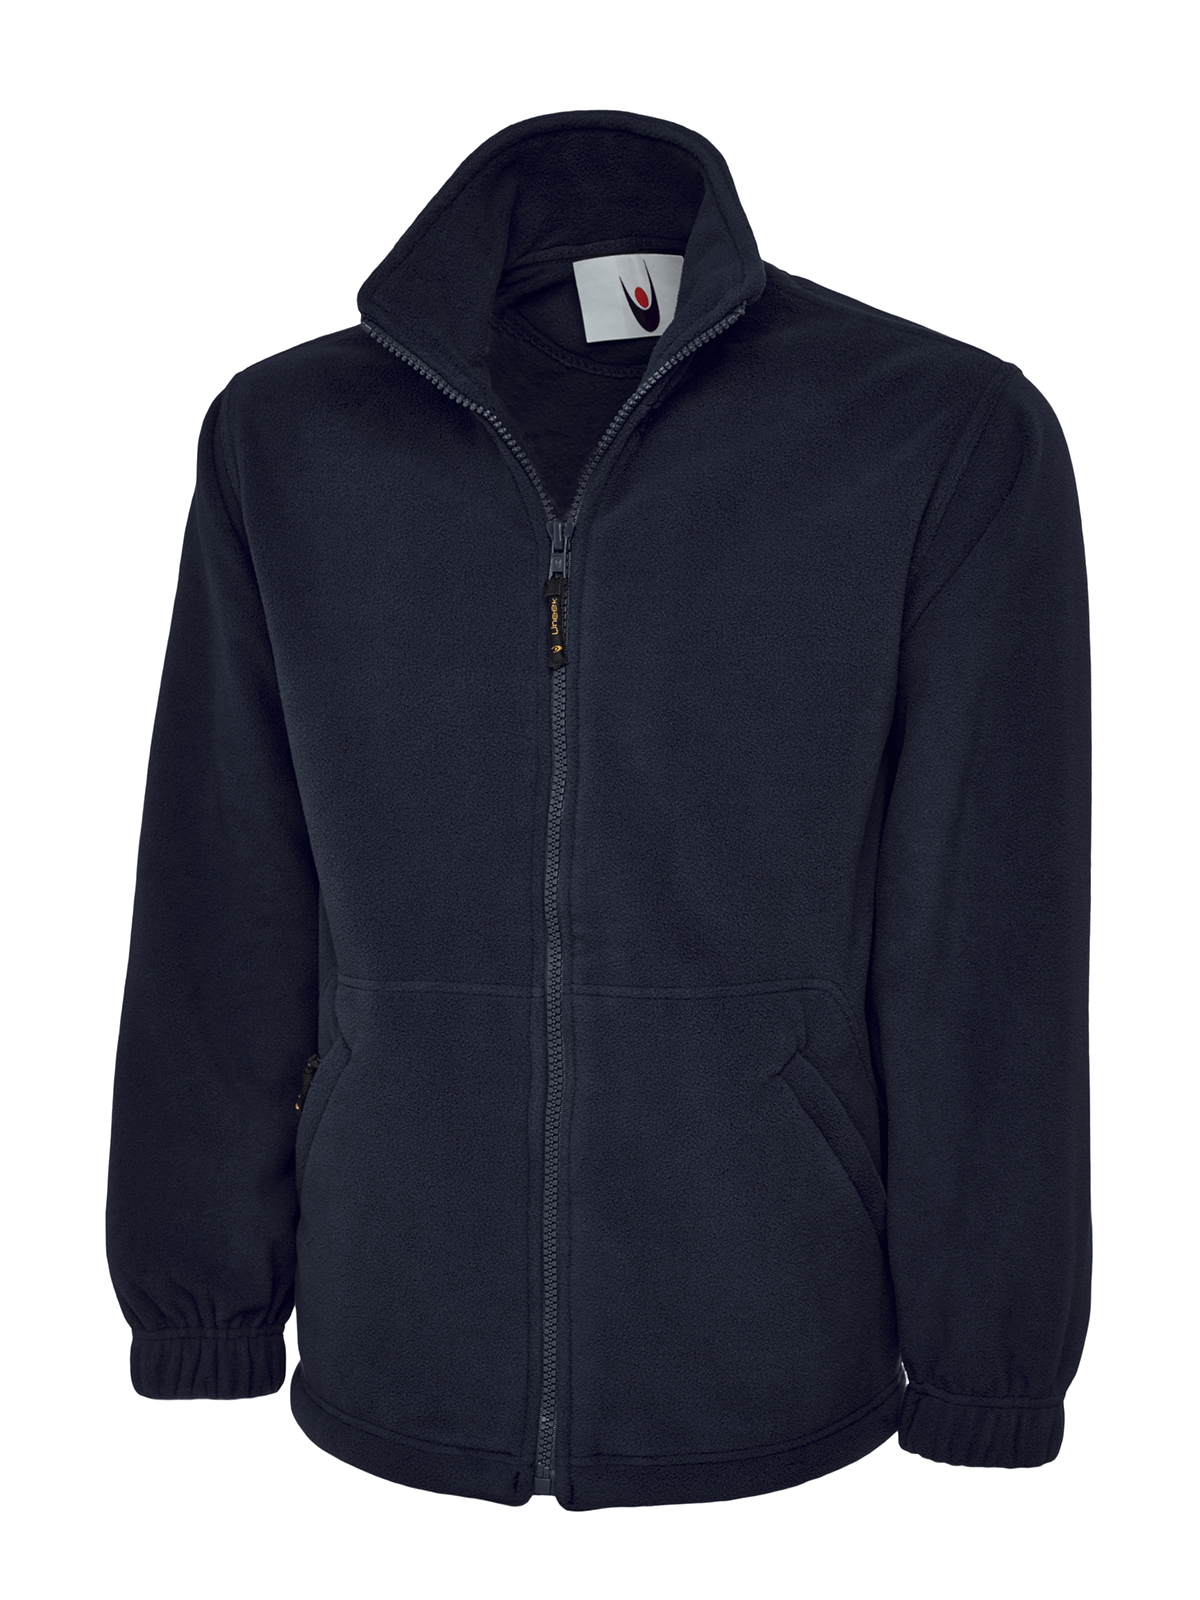 Full Zip Fleece Jacket, Navy - Size 3XL